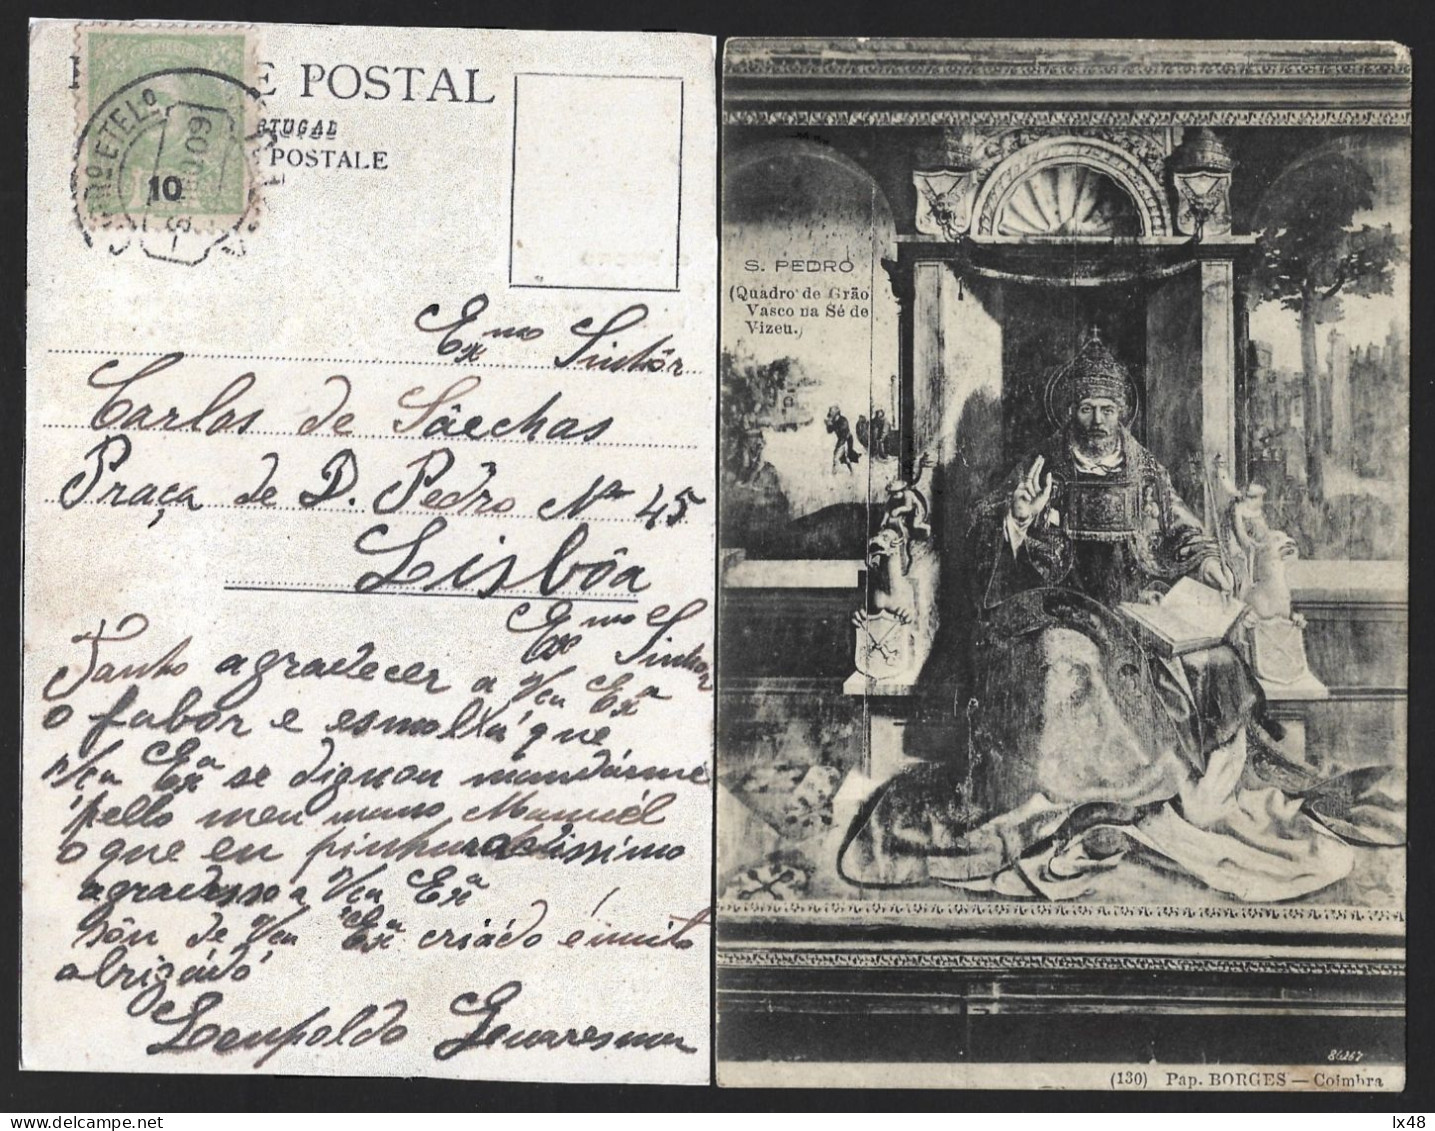 Postal Com Pintura 'S. Pedro' Quadro De Grão Vasco, Na Sé Viseu. Selo De 10 Rs D. Carlos Obliterado Em 1909 Em Viseu. - Storia Postale